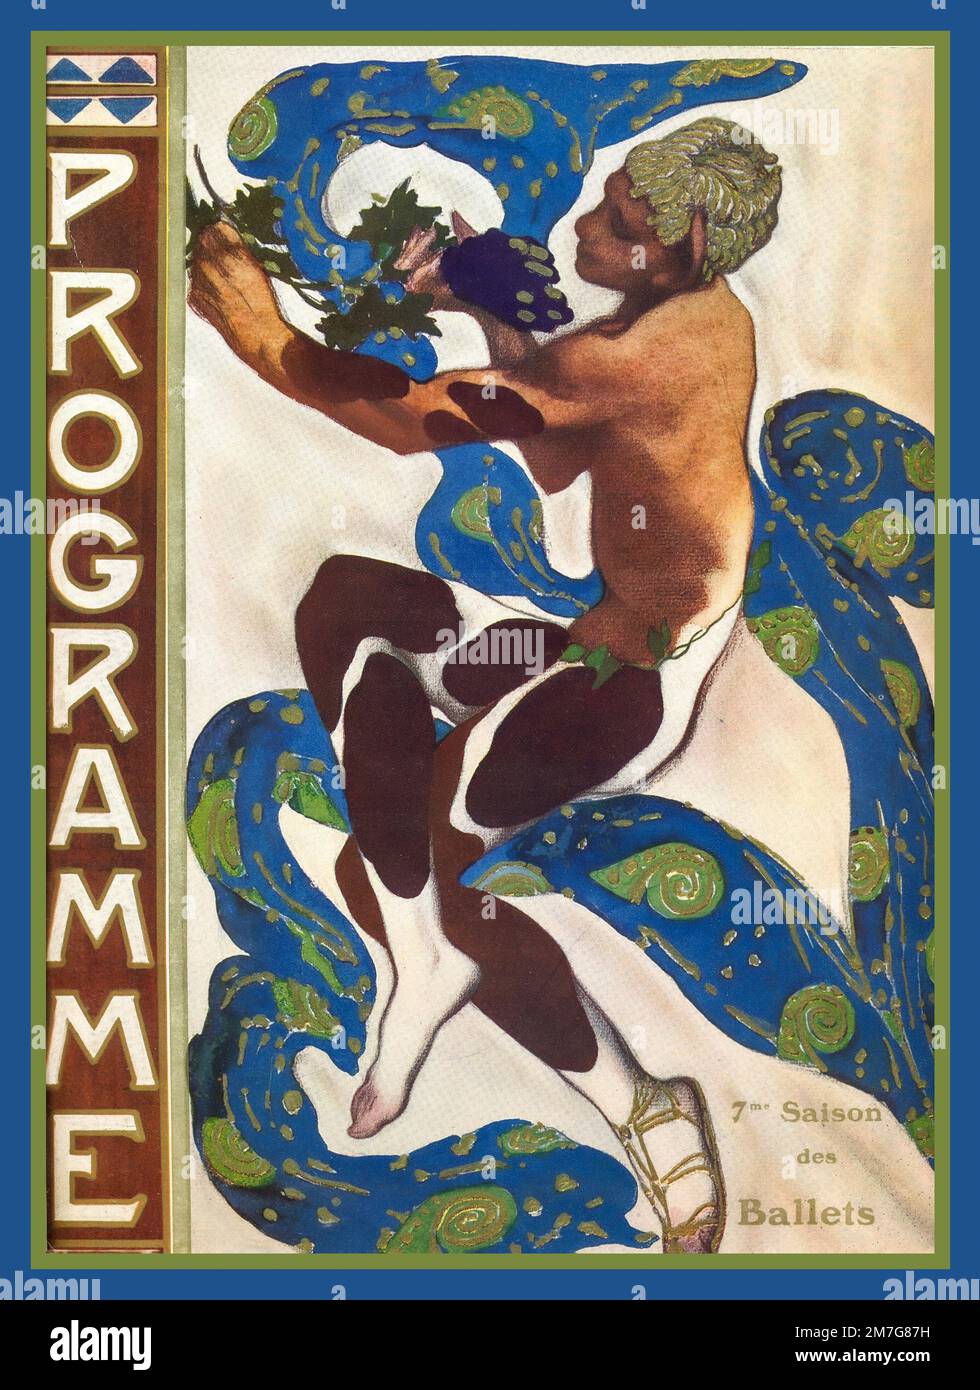 NIJINSKY 1912 Ballet Program Cover Illustration Vaslav Nijinsky, nel pomeriggio del balletto di un Faun 1912 dell'artista Leon Bakst. L'Après-midi d'un faune music di Claude Debussy Foto Stock